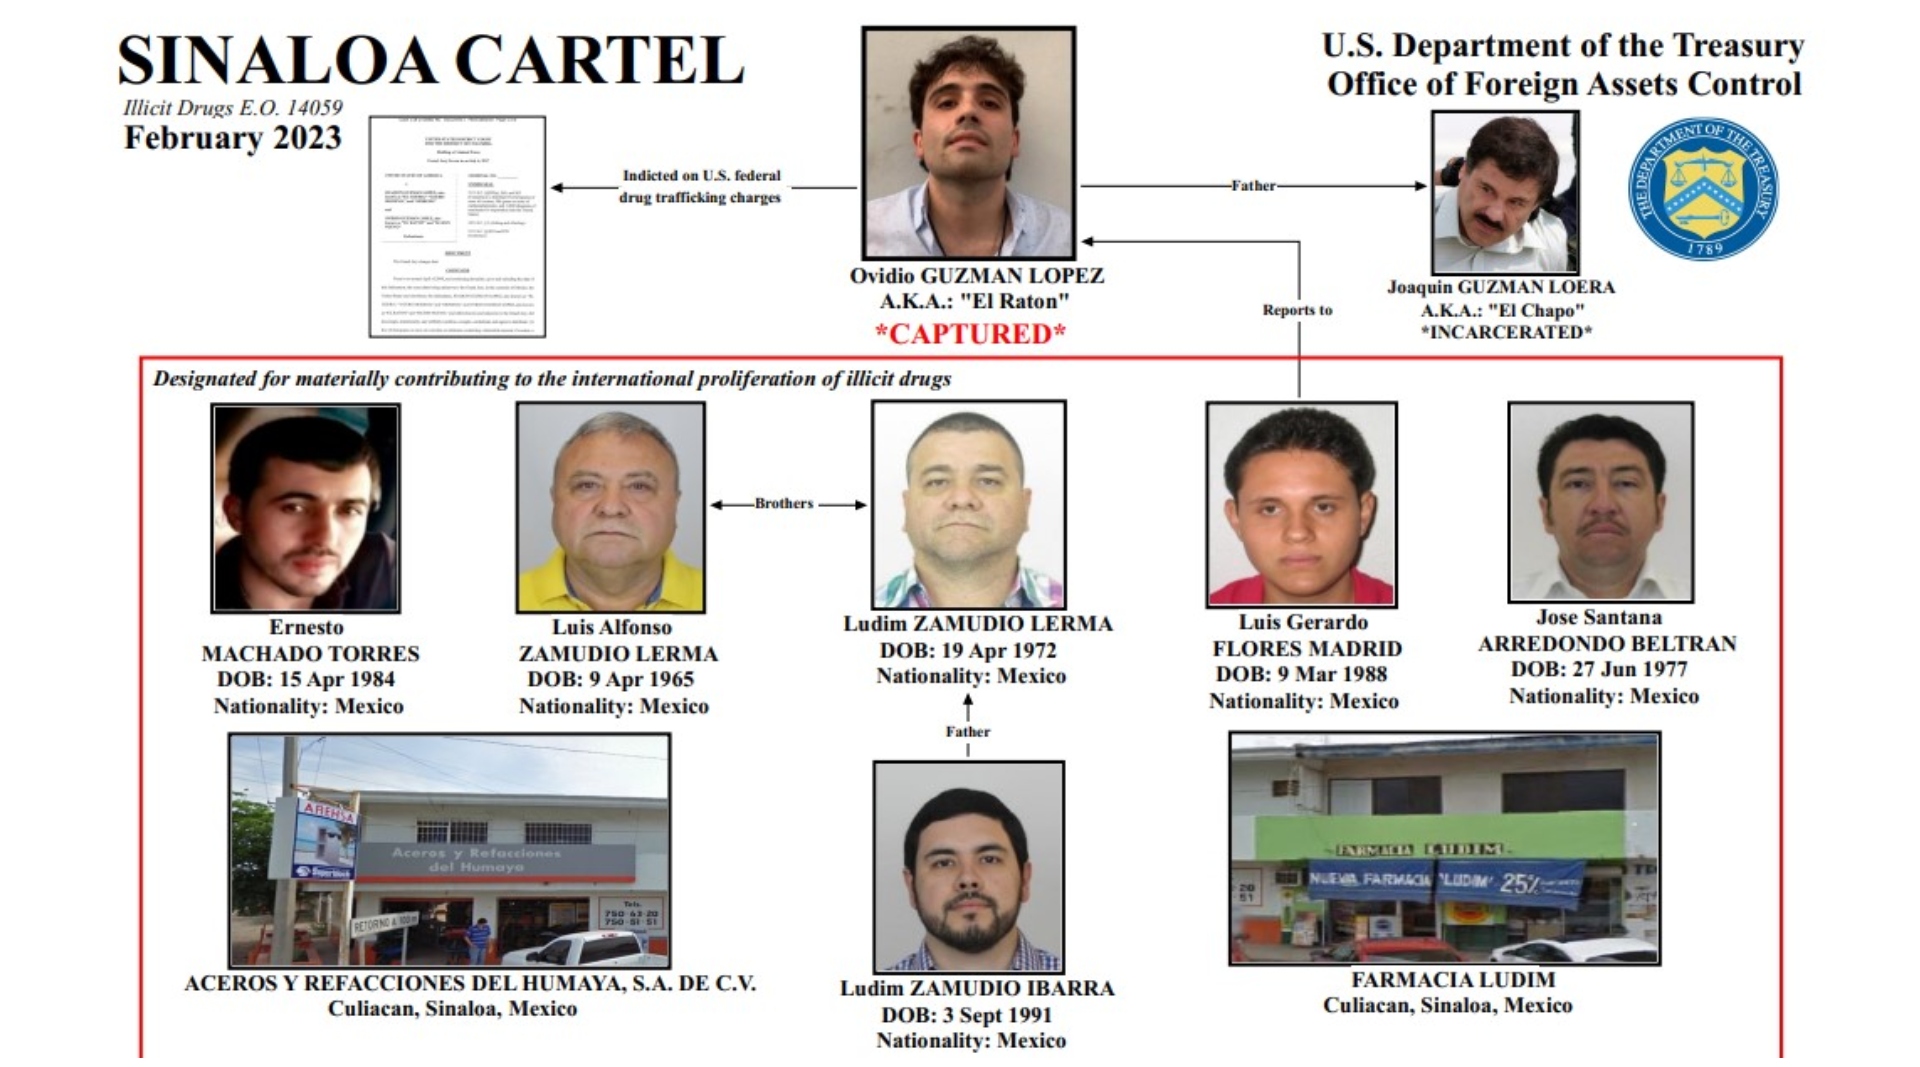 Los hermanos Zamudio Lerma y el hijo de uno de ellos habrían utilizado sus empresas para abastecer al Cártel de Sinaloa. (Departamento del Tesoro de EEUU)